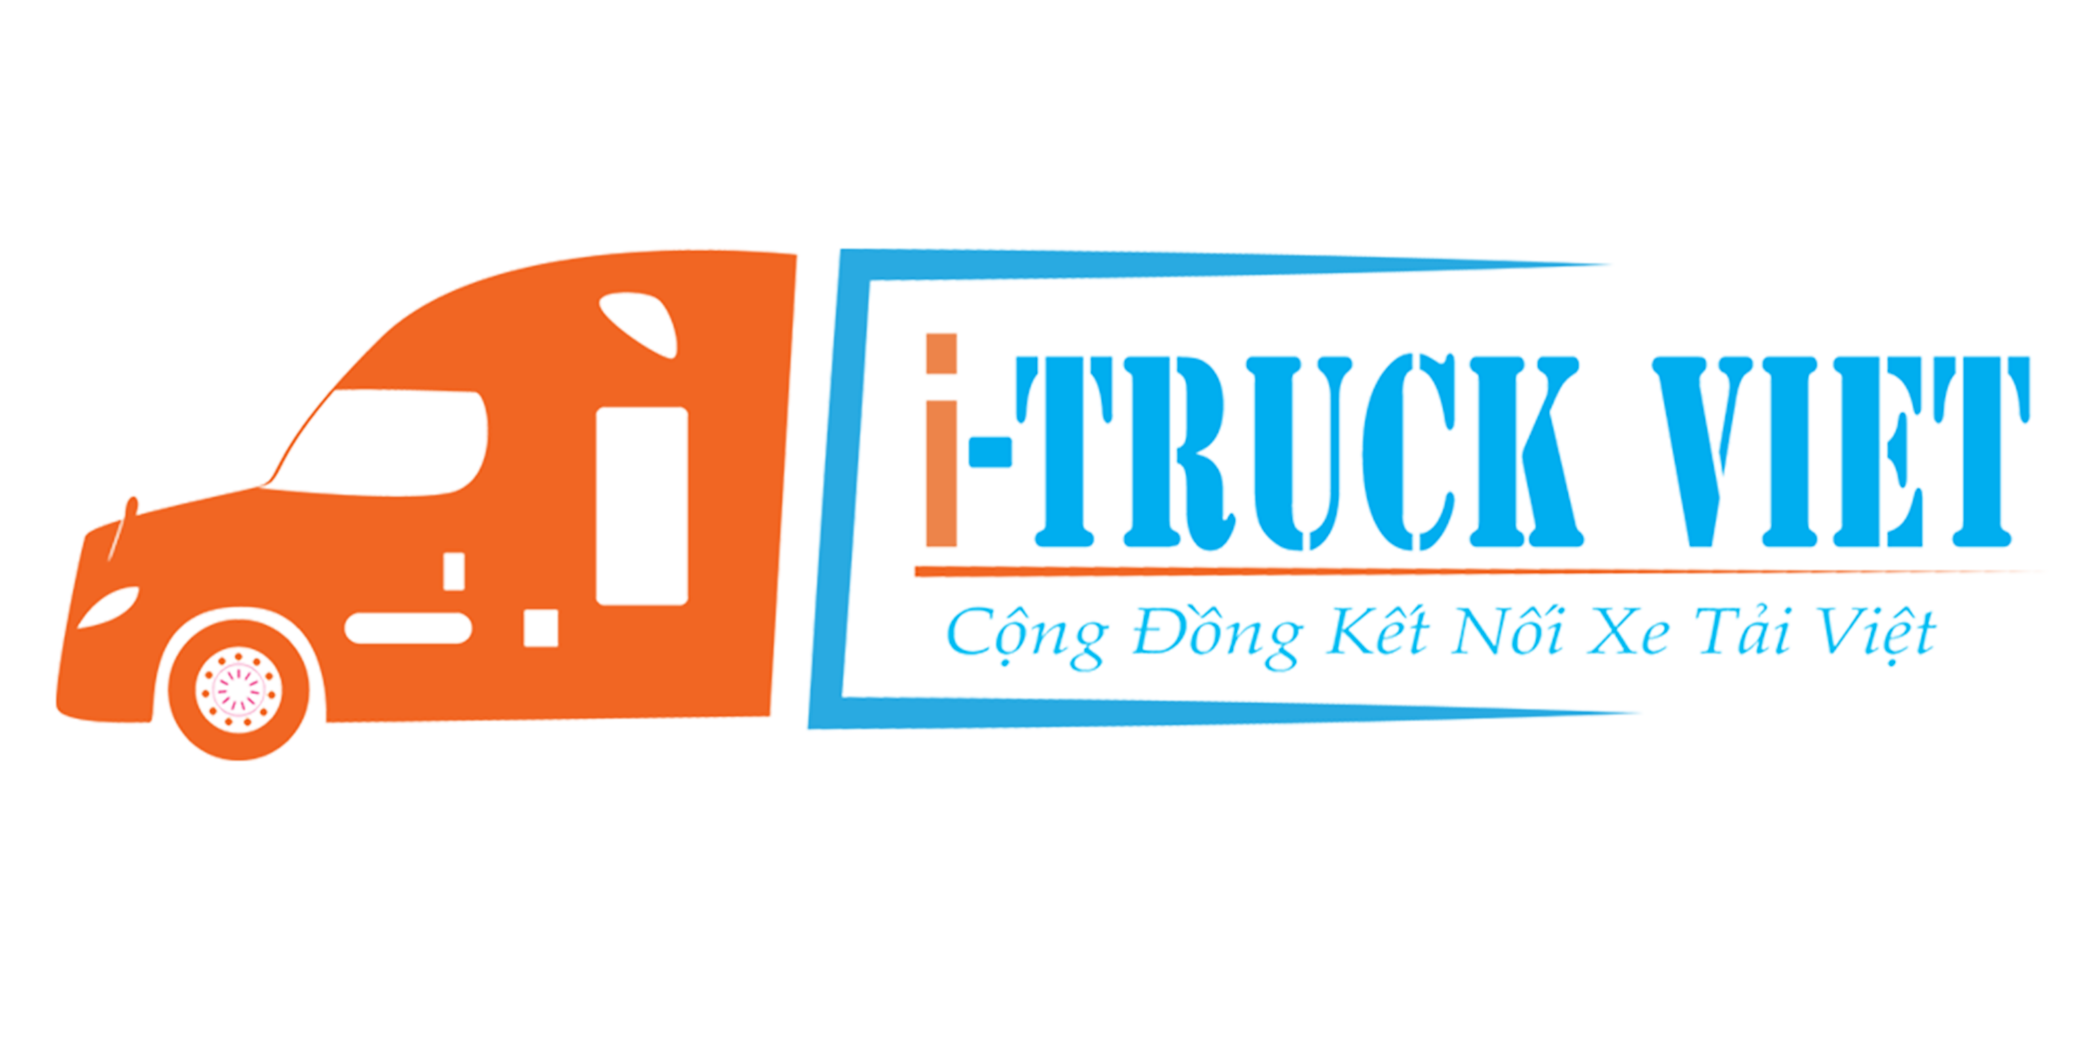 Về chúng tôi i-Truck Việt 14-16-logo-500-x-250-png